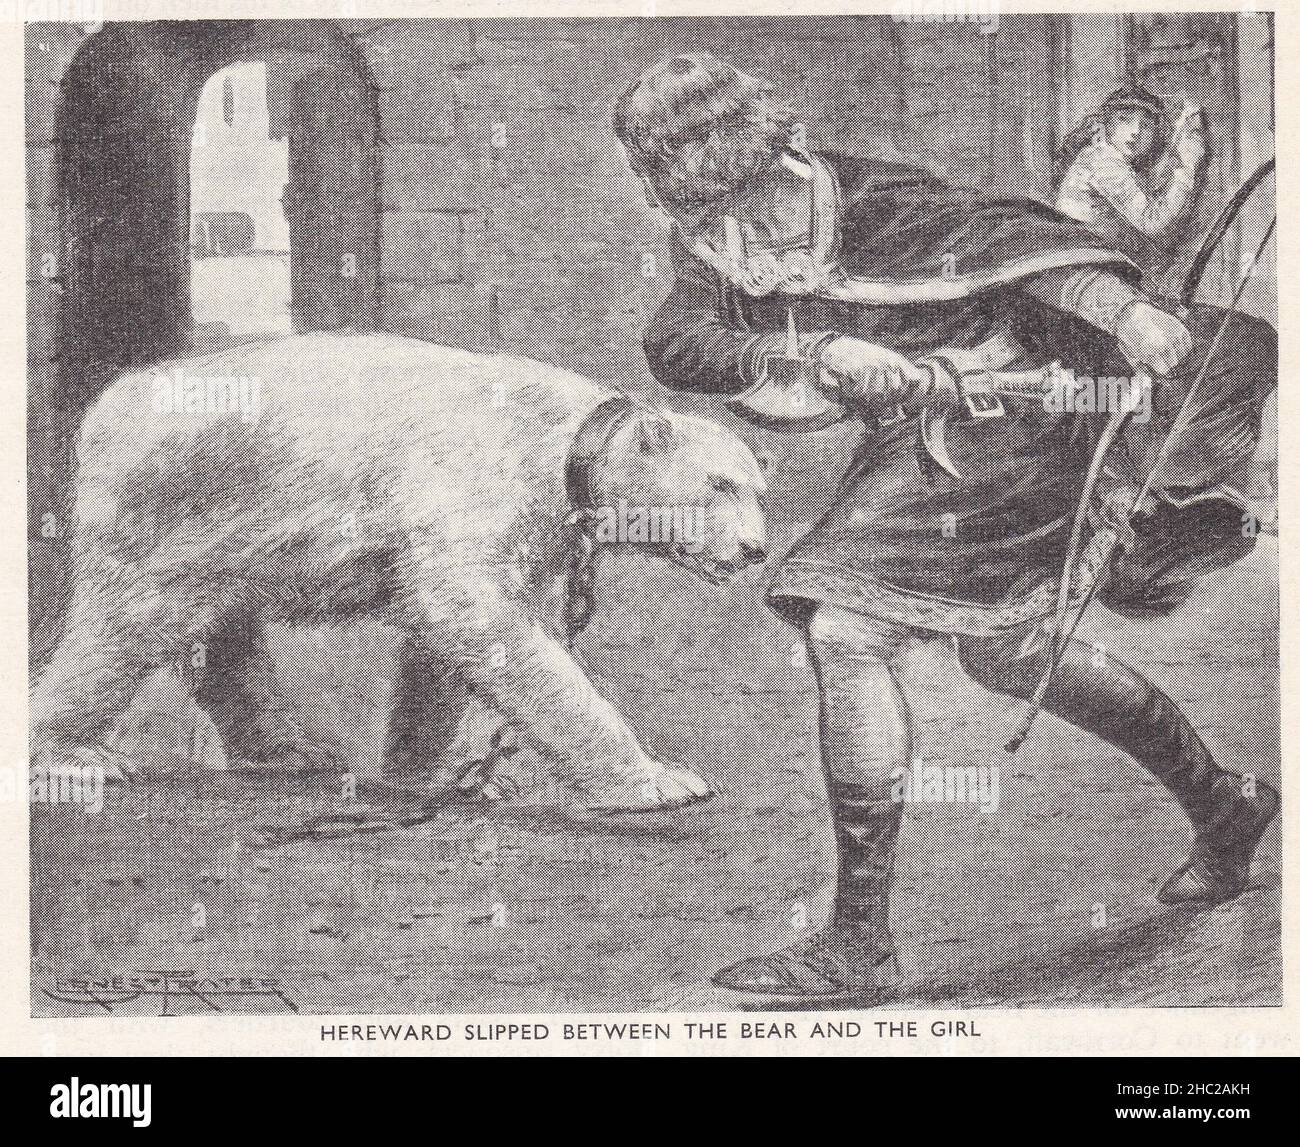 Hereward schlüpfte zwischen dem Bären und dem Mädchen - angelsächsischer Adliger und Anführer des lokalen Widerstands gegen die normannische Eroberung Englands, 11th. Jahrhundert. Stockfoto